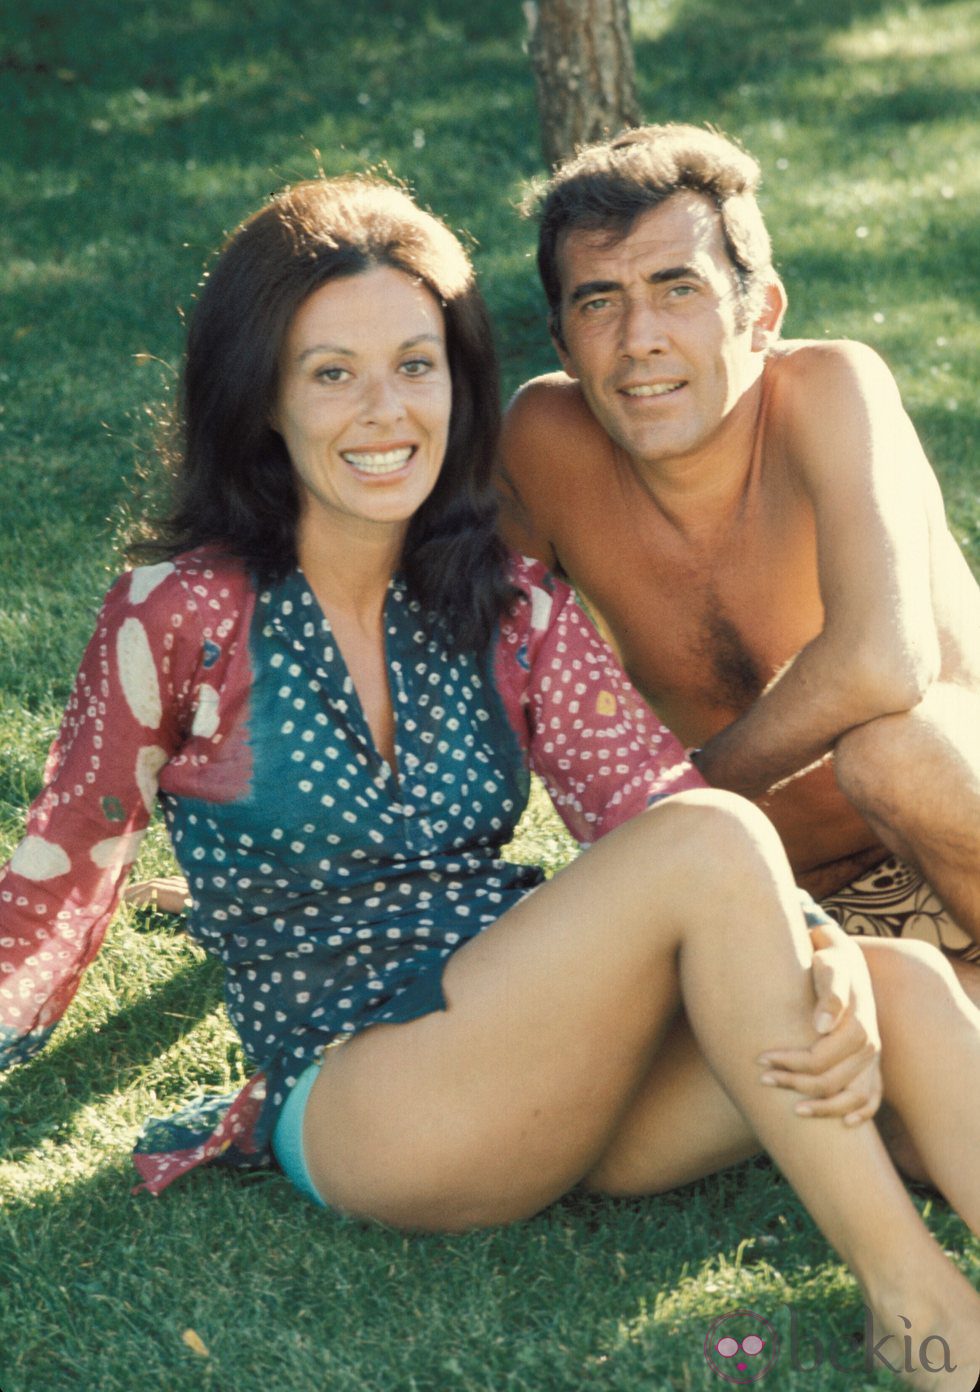 Fernando Guillén y Gemma Cuervo durante unas vacaciones en los años 70